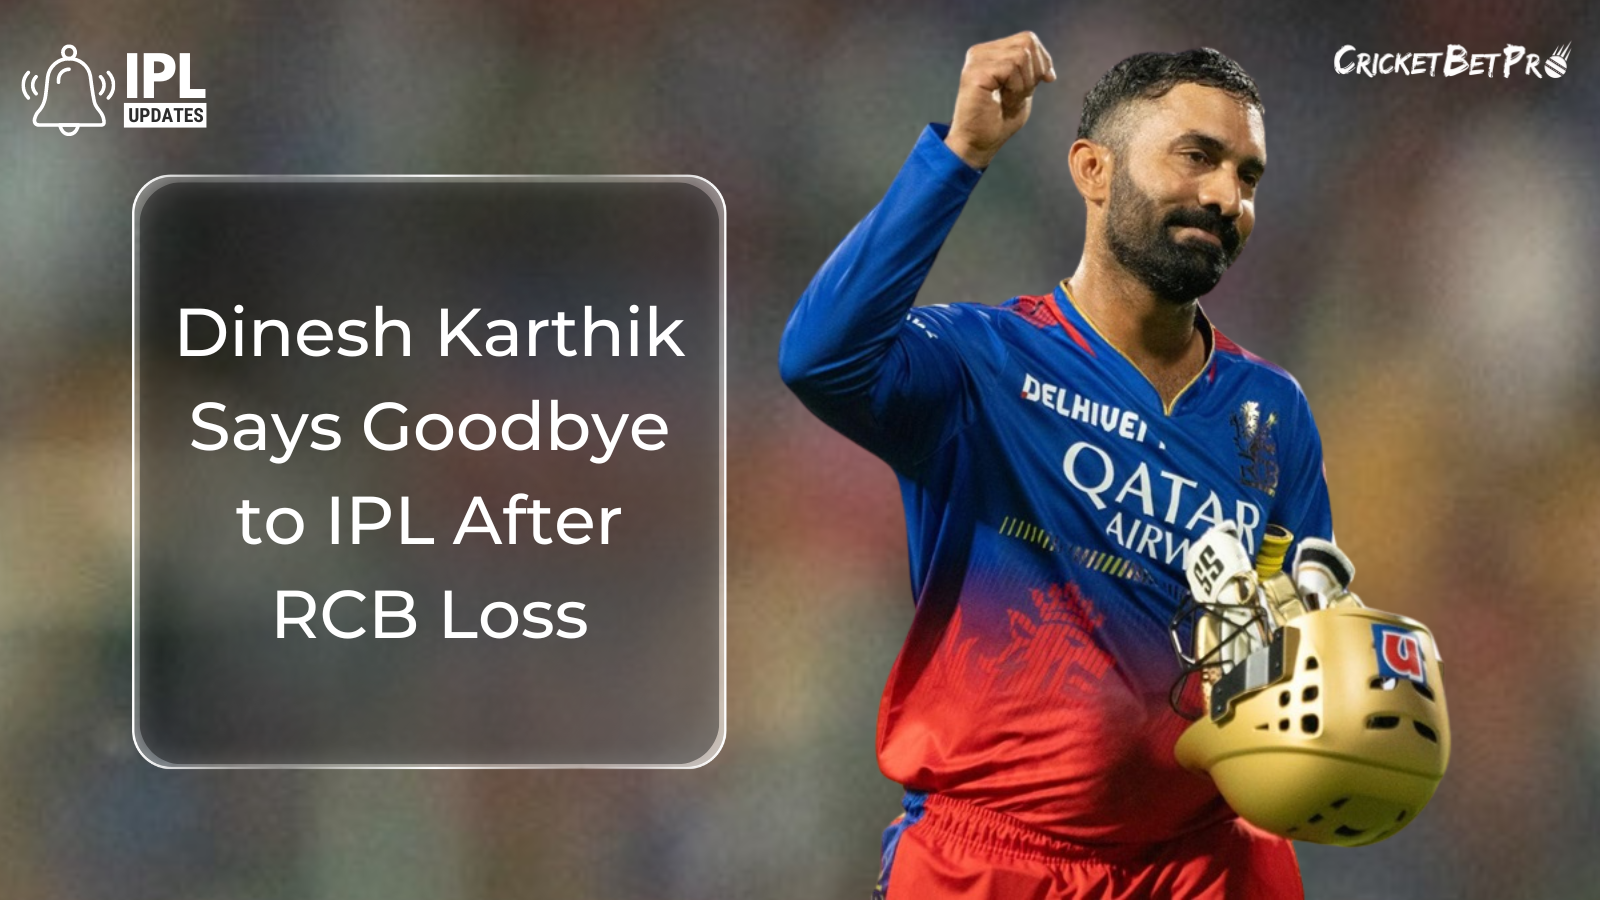 Dinesh Karthik Says Goodbye to IPL After RCB Loss